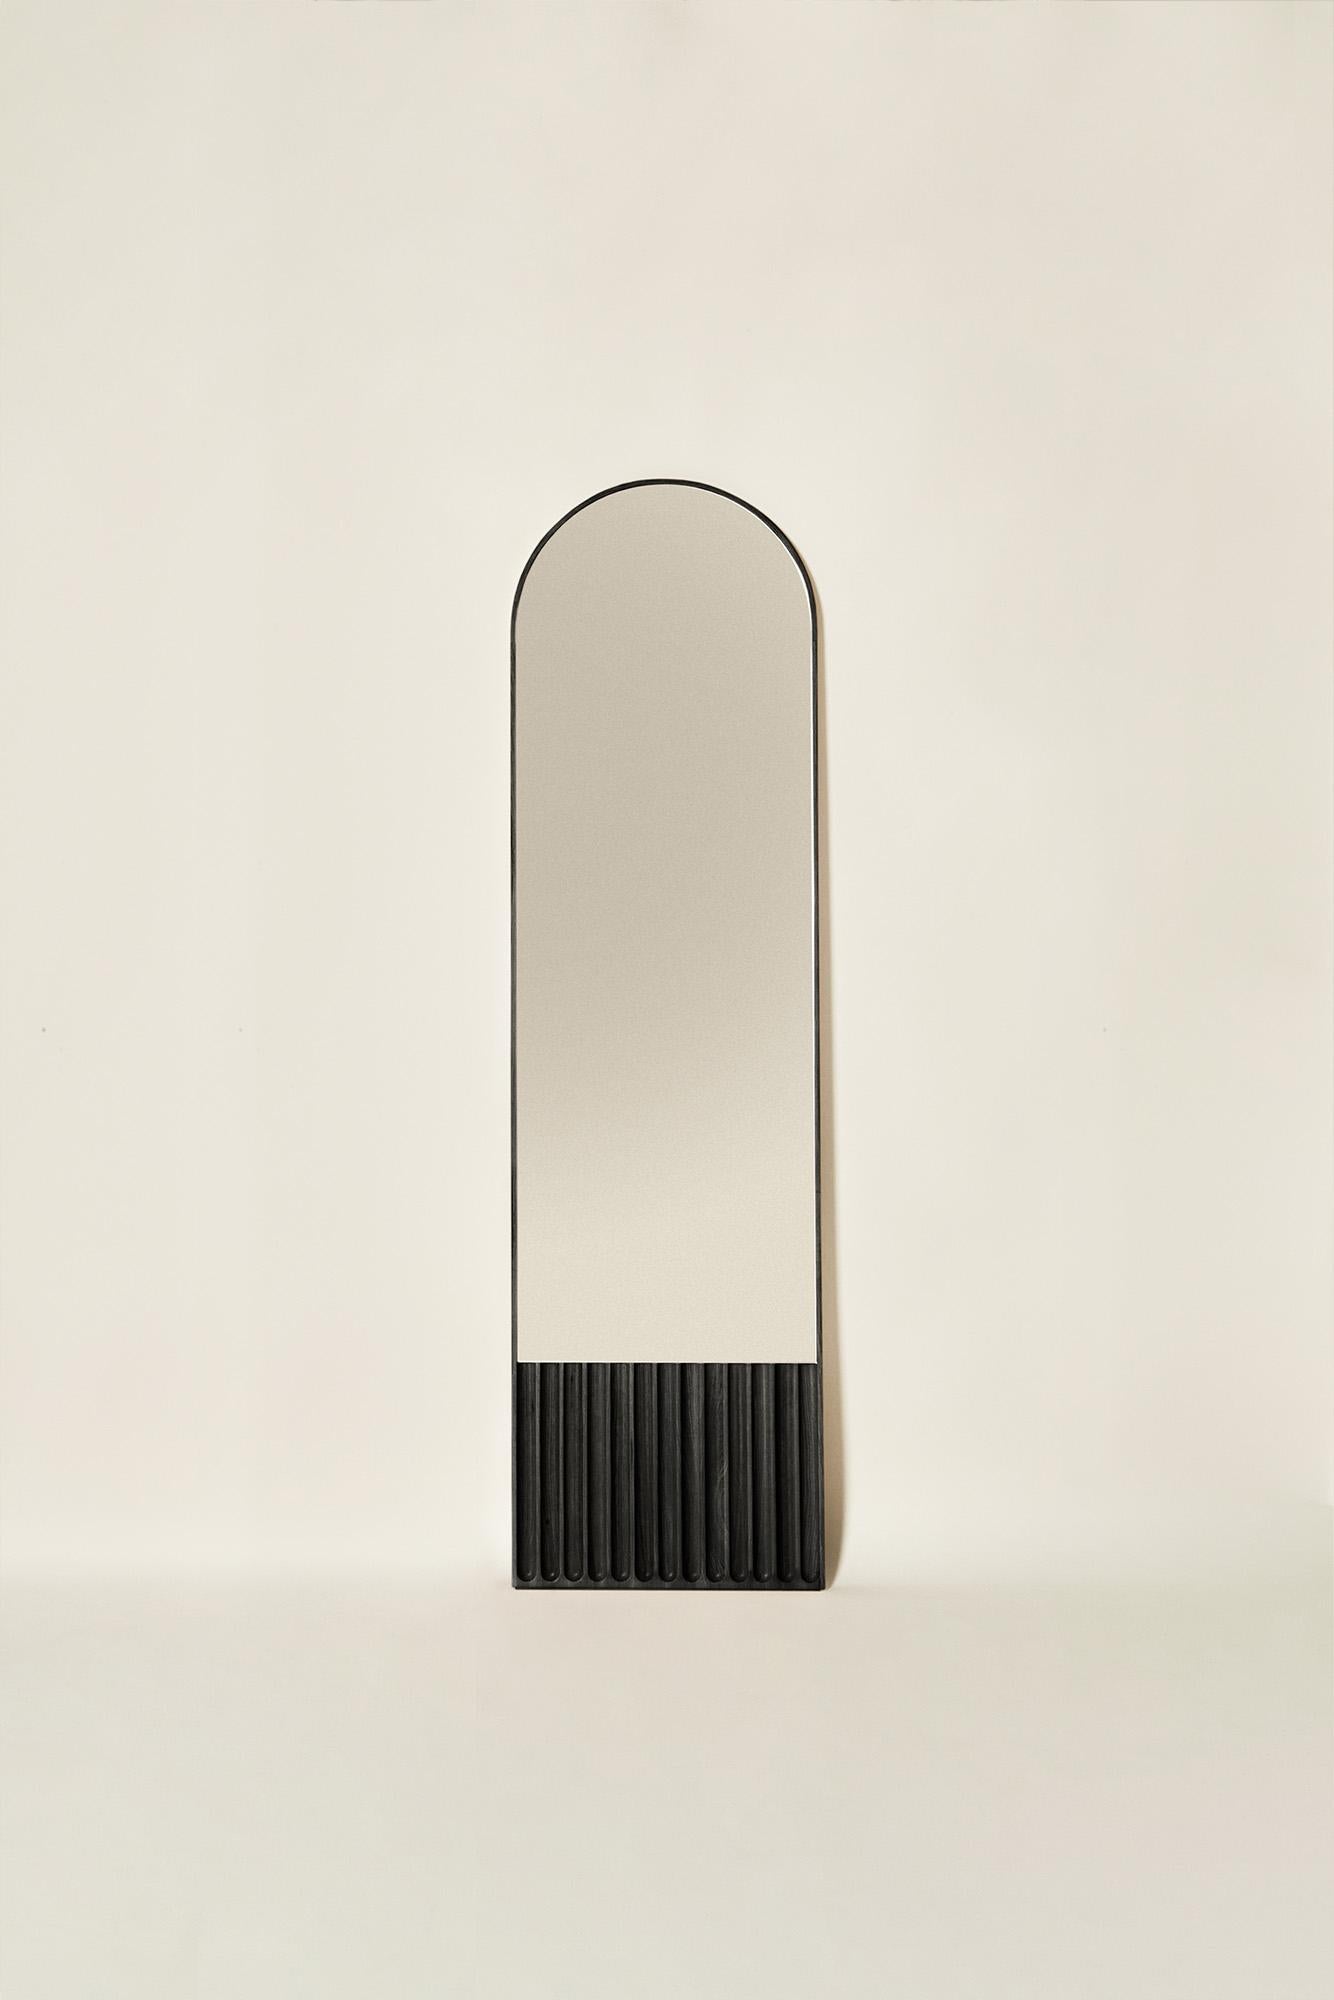 Tutto Sesto Solid Wood Oval Mirror, Ash in Black Finish, Contemporary In New Condition For Sale In Cadeglioppi de Oppeano, VR